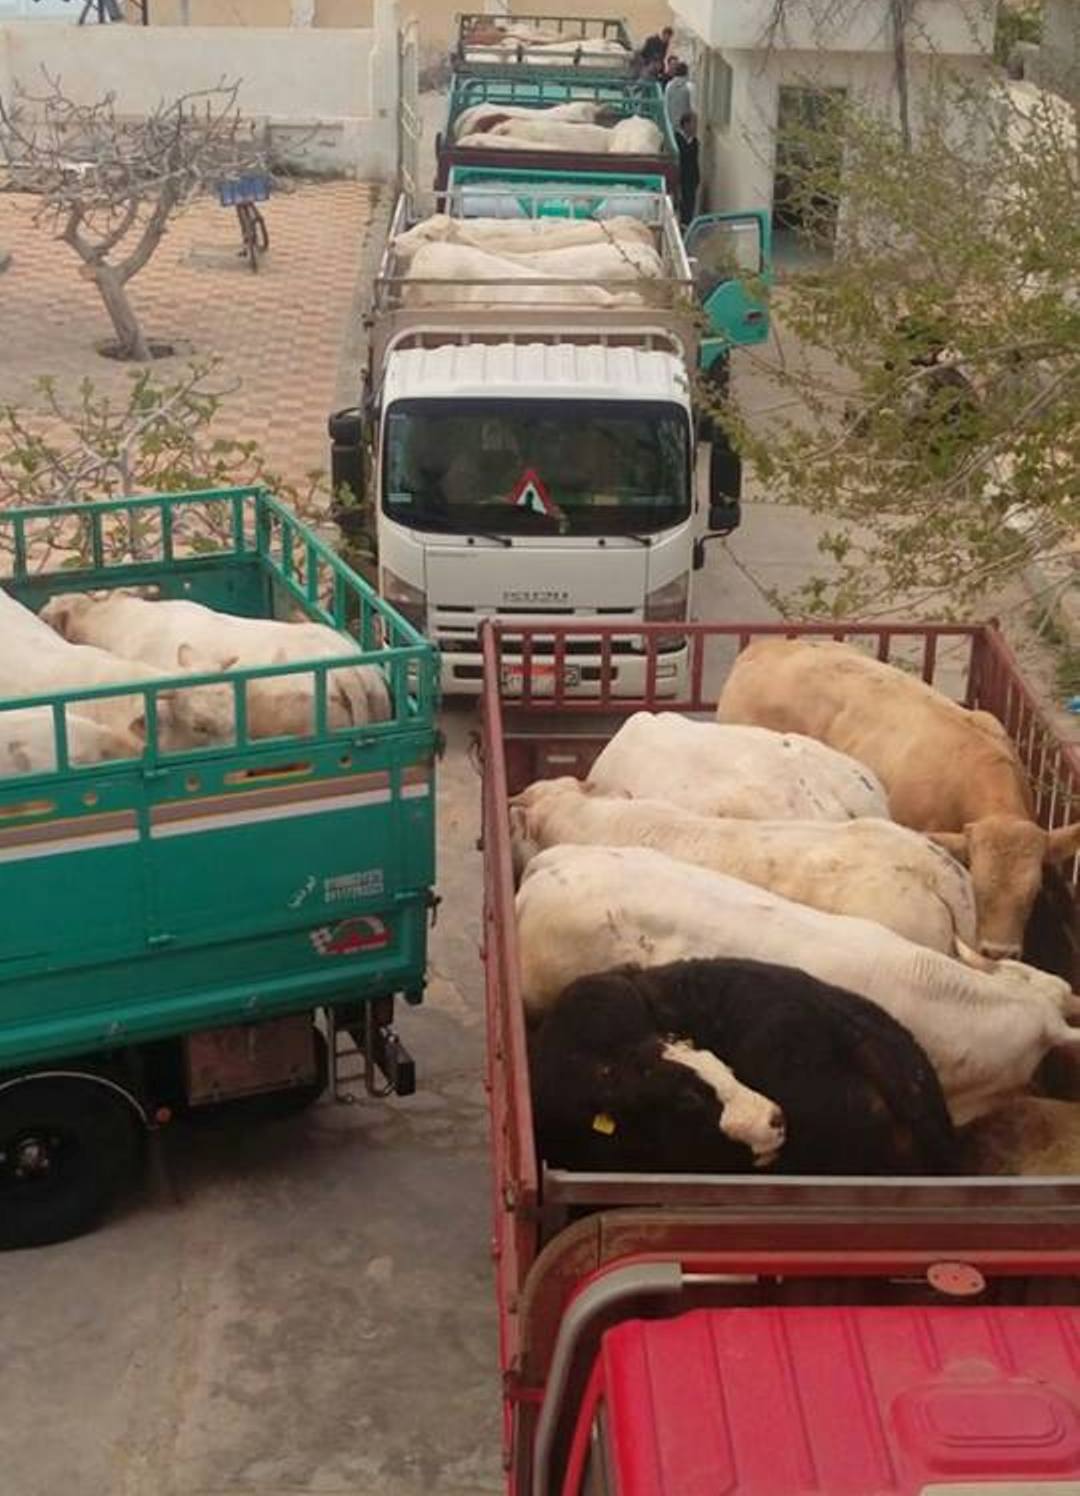 الماشية المضبوطة كانت في طريقها للتجار بمحافظة الشرقية